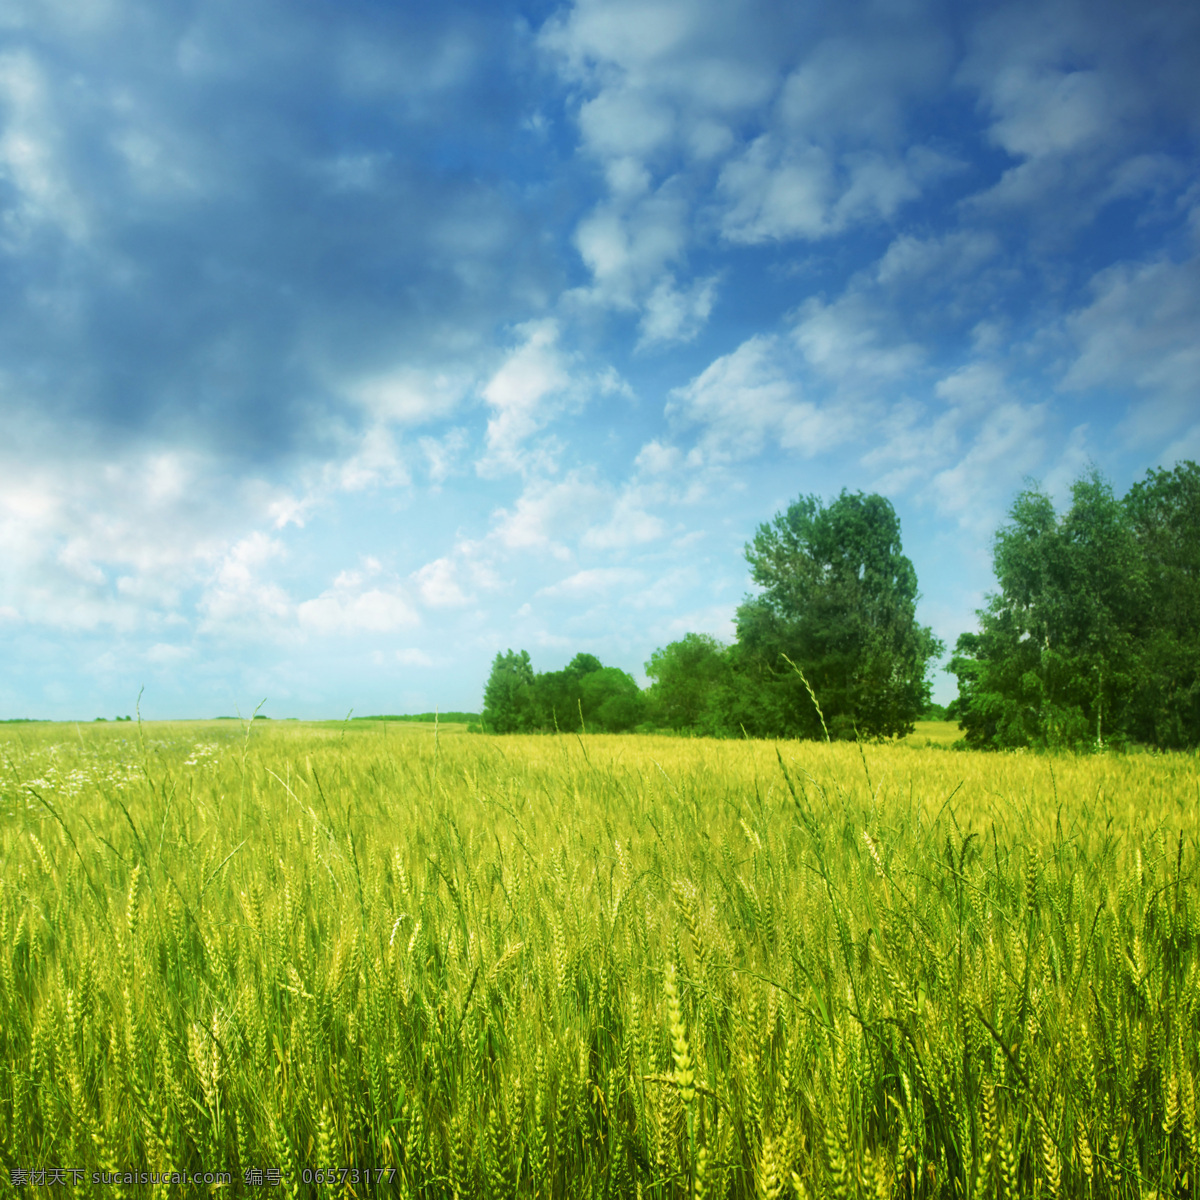 美丽 麦田 风景 麦地 小麦 麦穗 麦子 田园风光 美丽景色 美丽风景 风景摄影 美景 风景图片